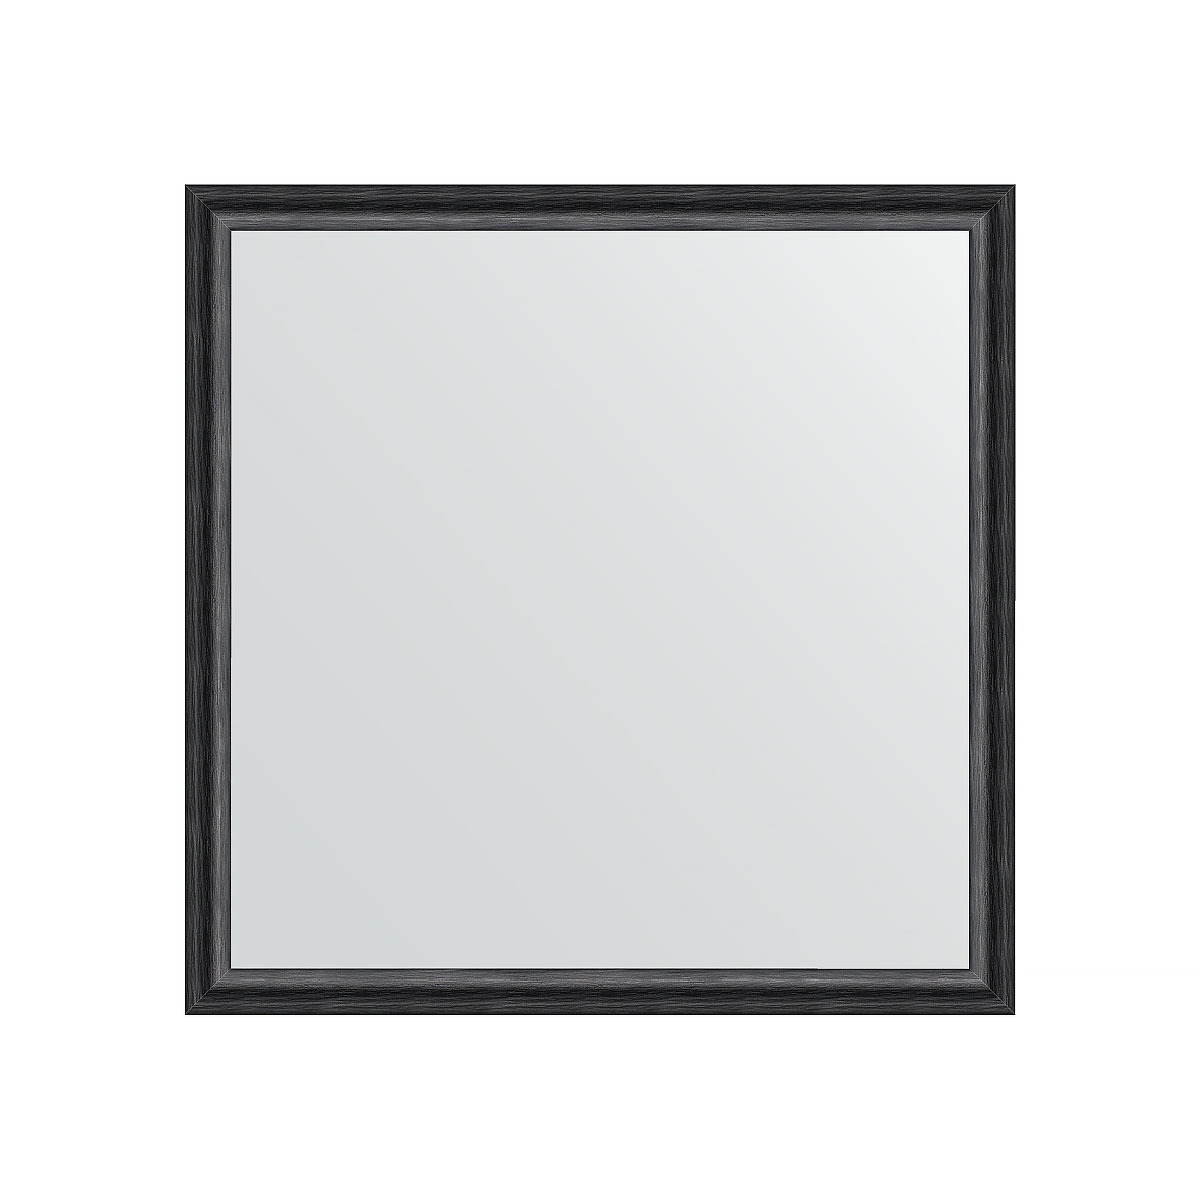 Зеркало в багетной раме Evoform черный дуб 37 мм 70х70 см зеркало evoform в багетной раме 70х70см bx 0662 bx 0662